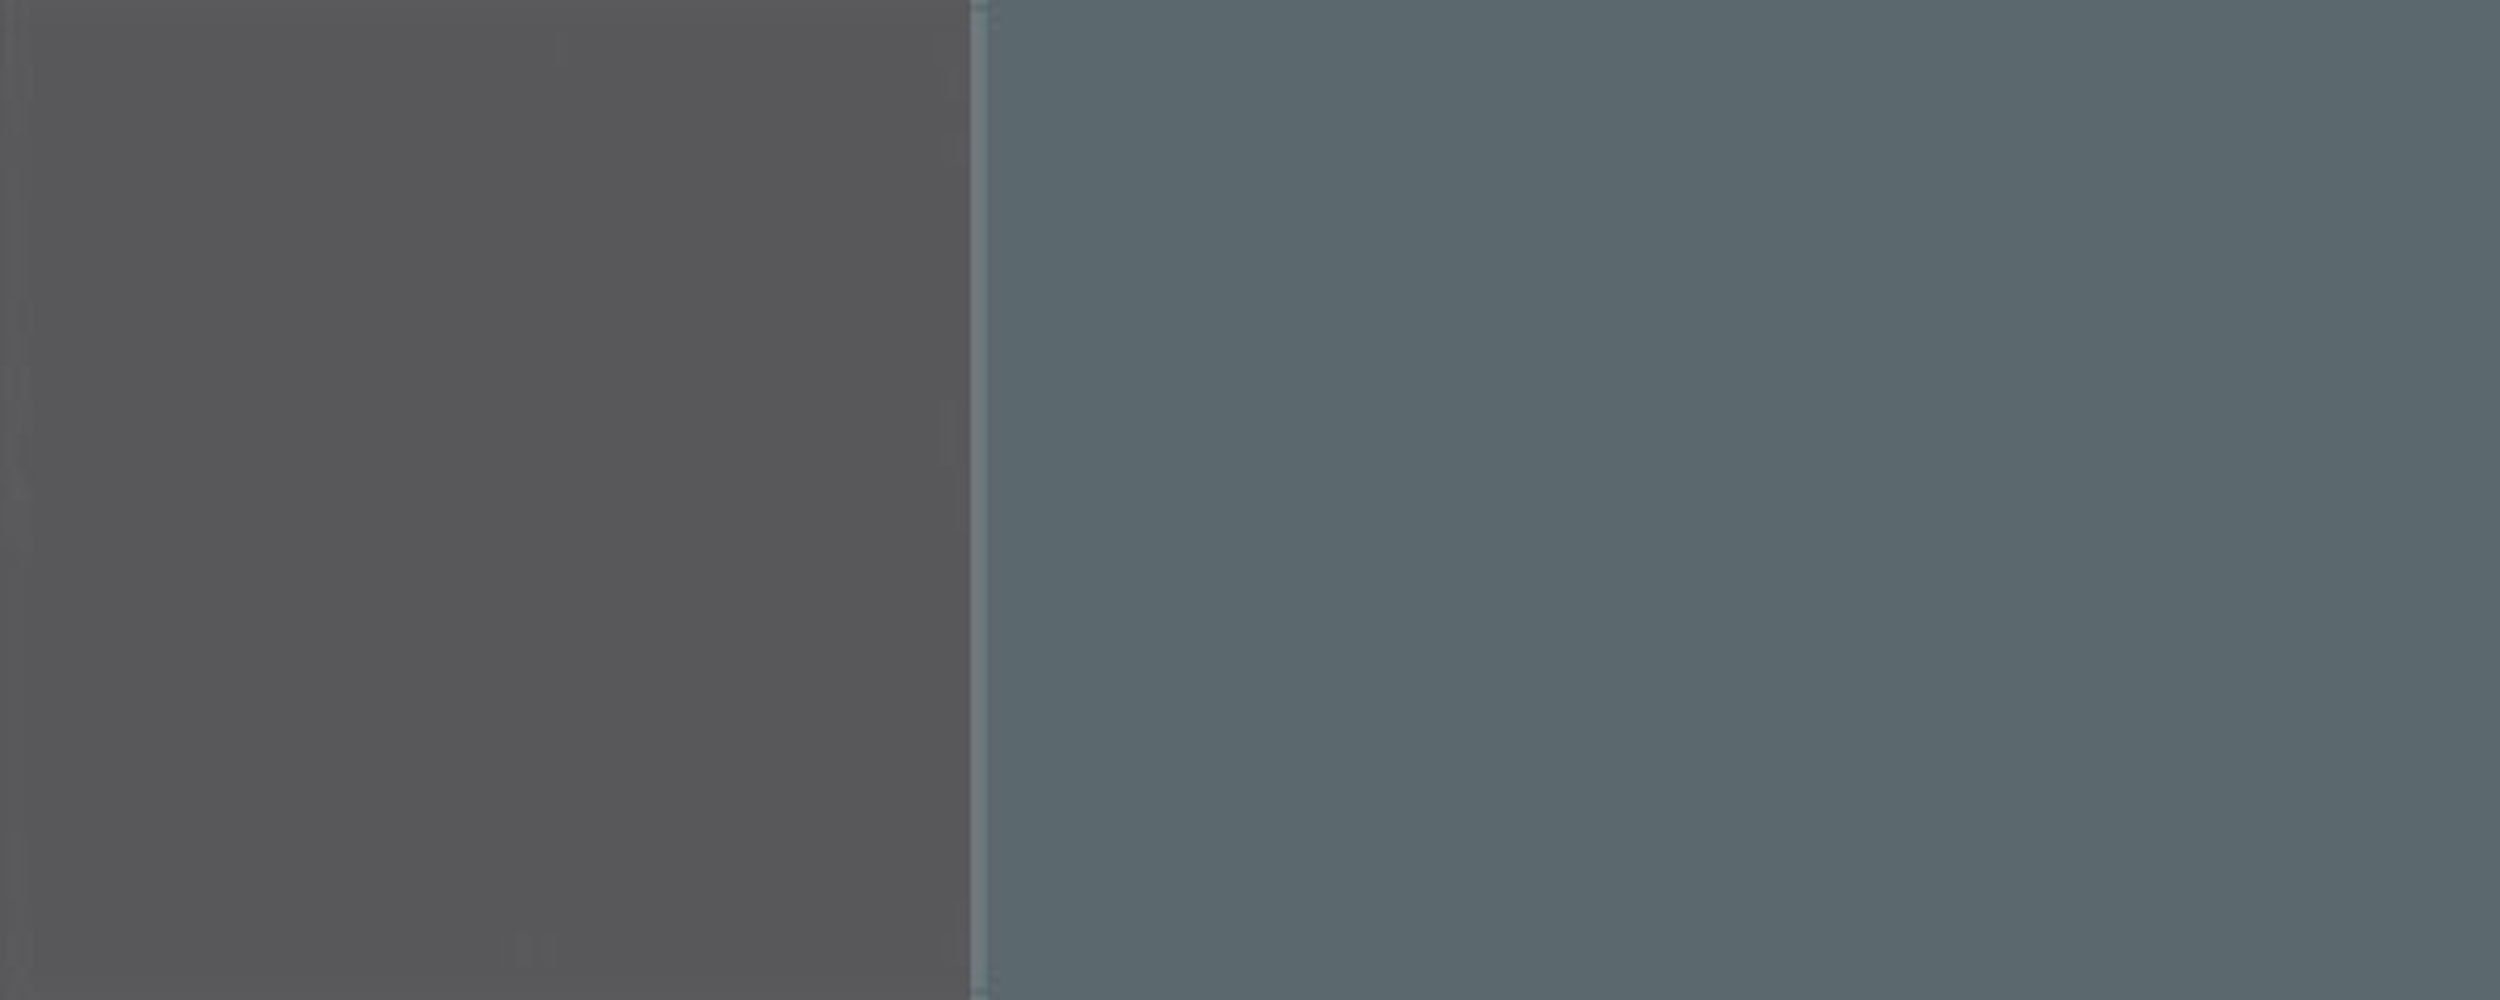 80cm Florence blaugrau 7031 Klapphängeschrank RAL 2-türig grifflos wählbar Front- Korpusfarbe (Florence) und Hochglanz Feldmann-Wohnen